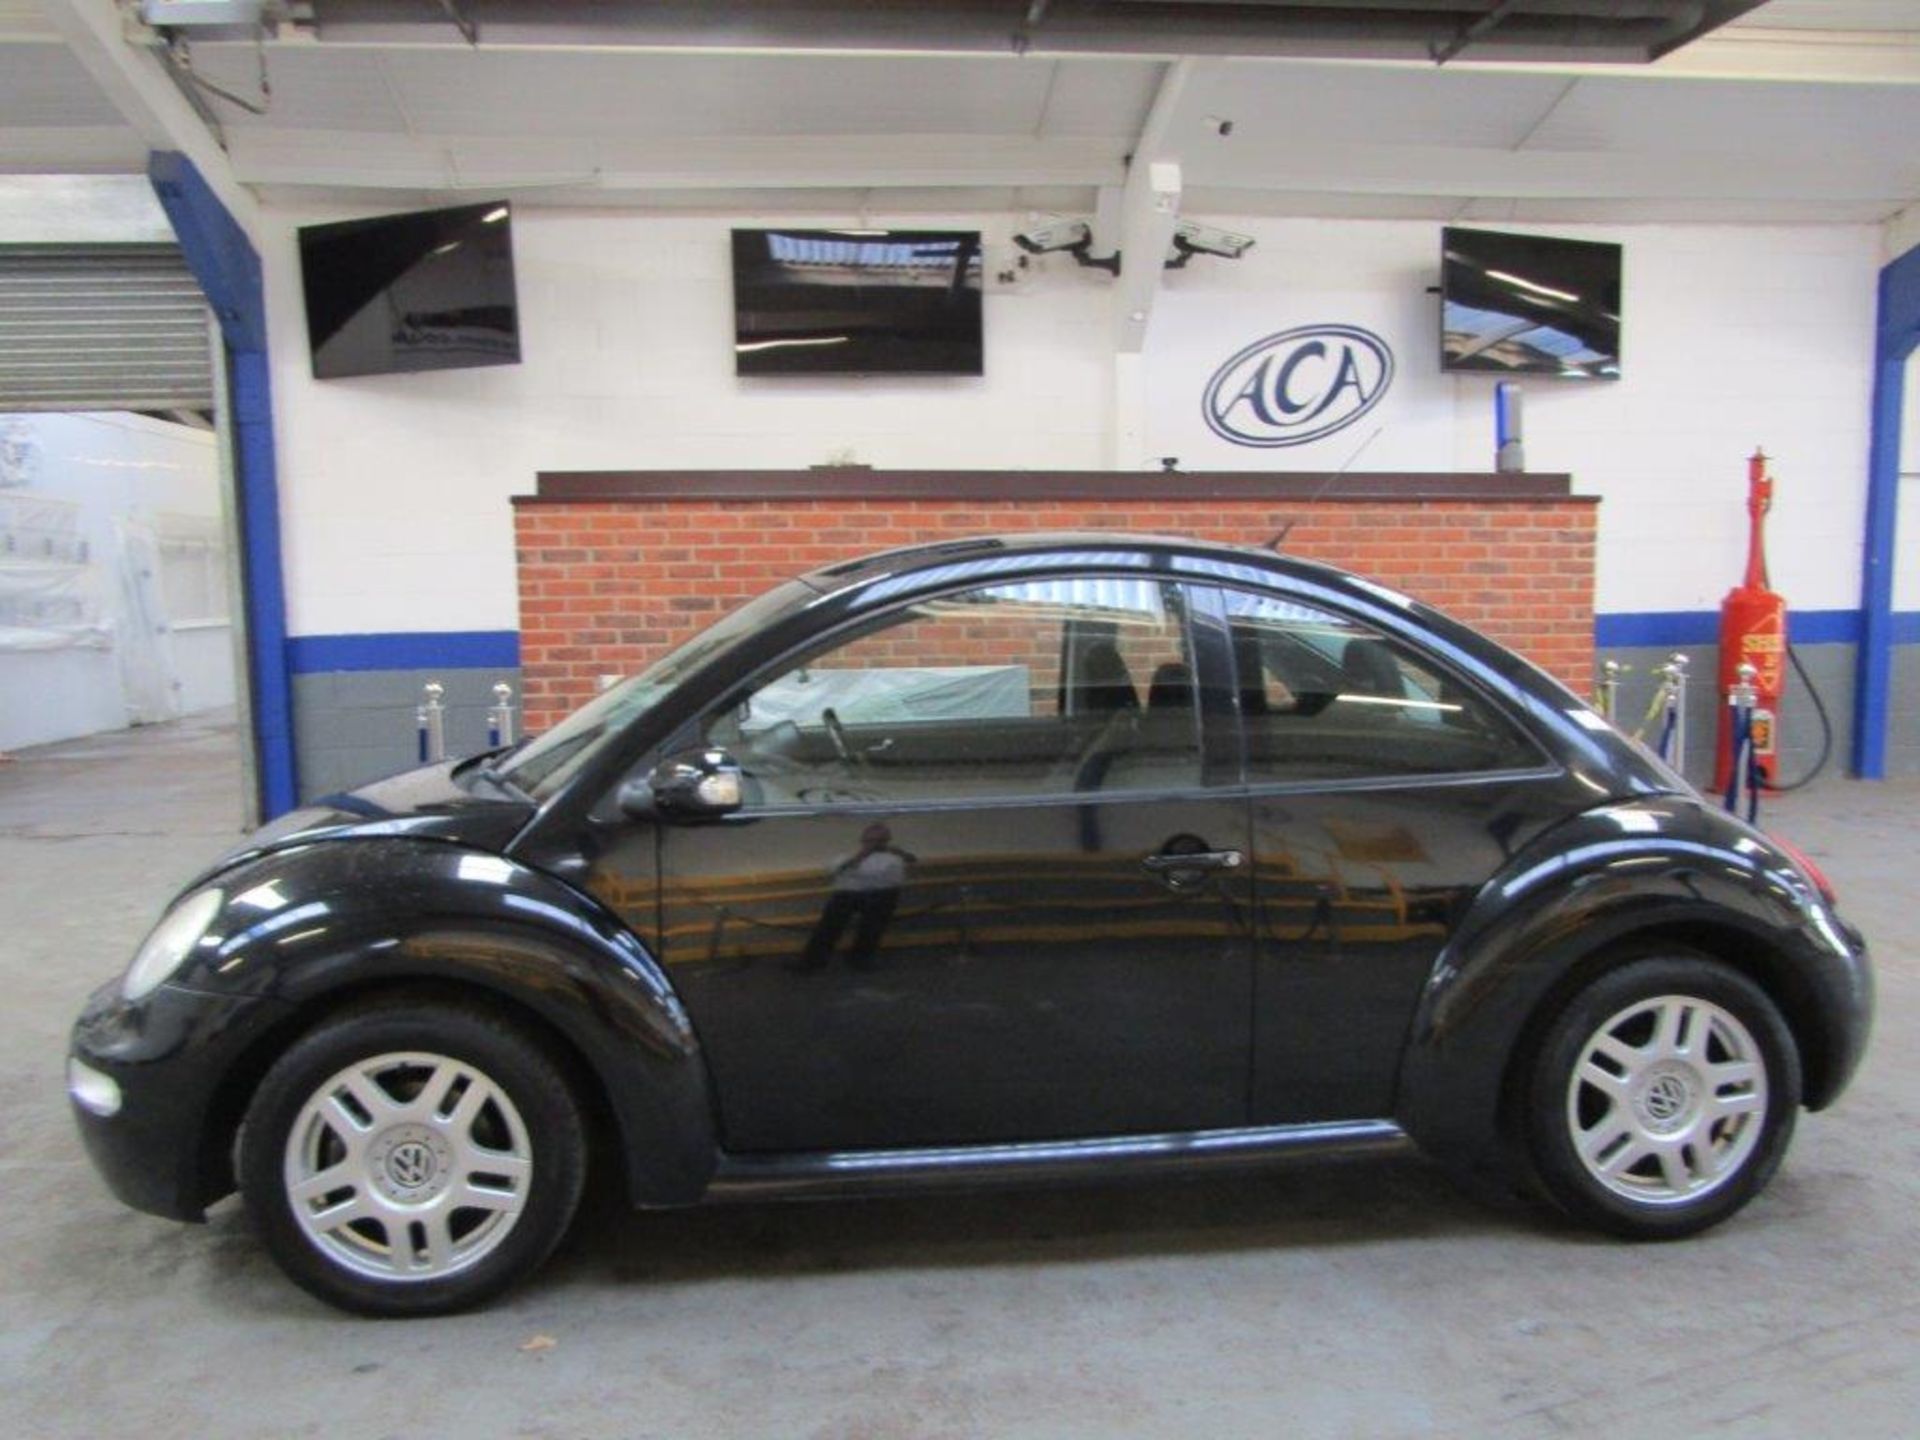 54 04 VW Beetle - Image 2 of 21